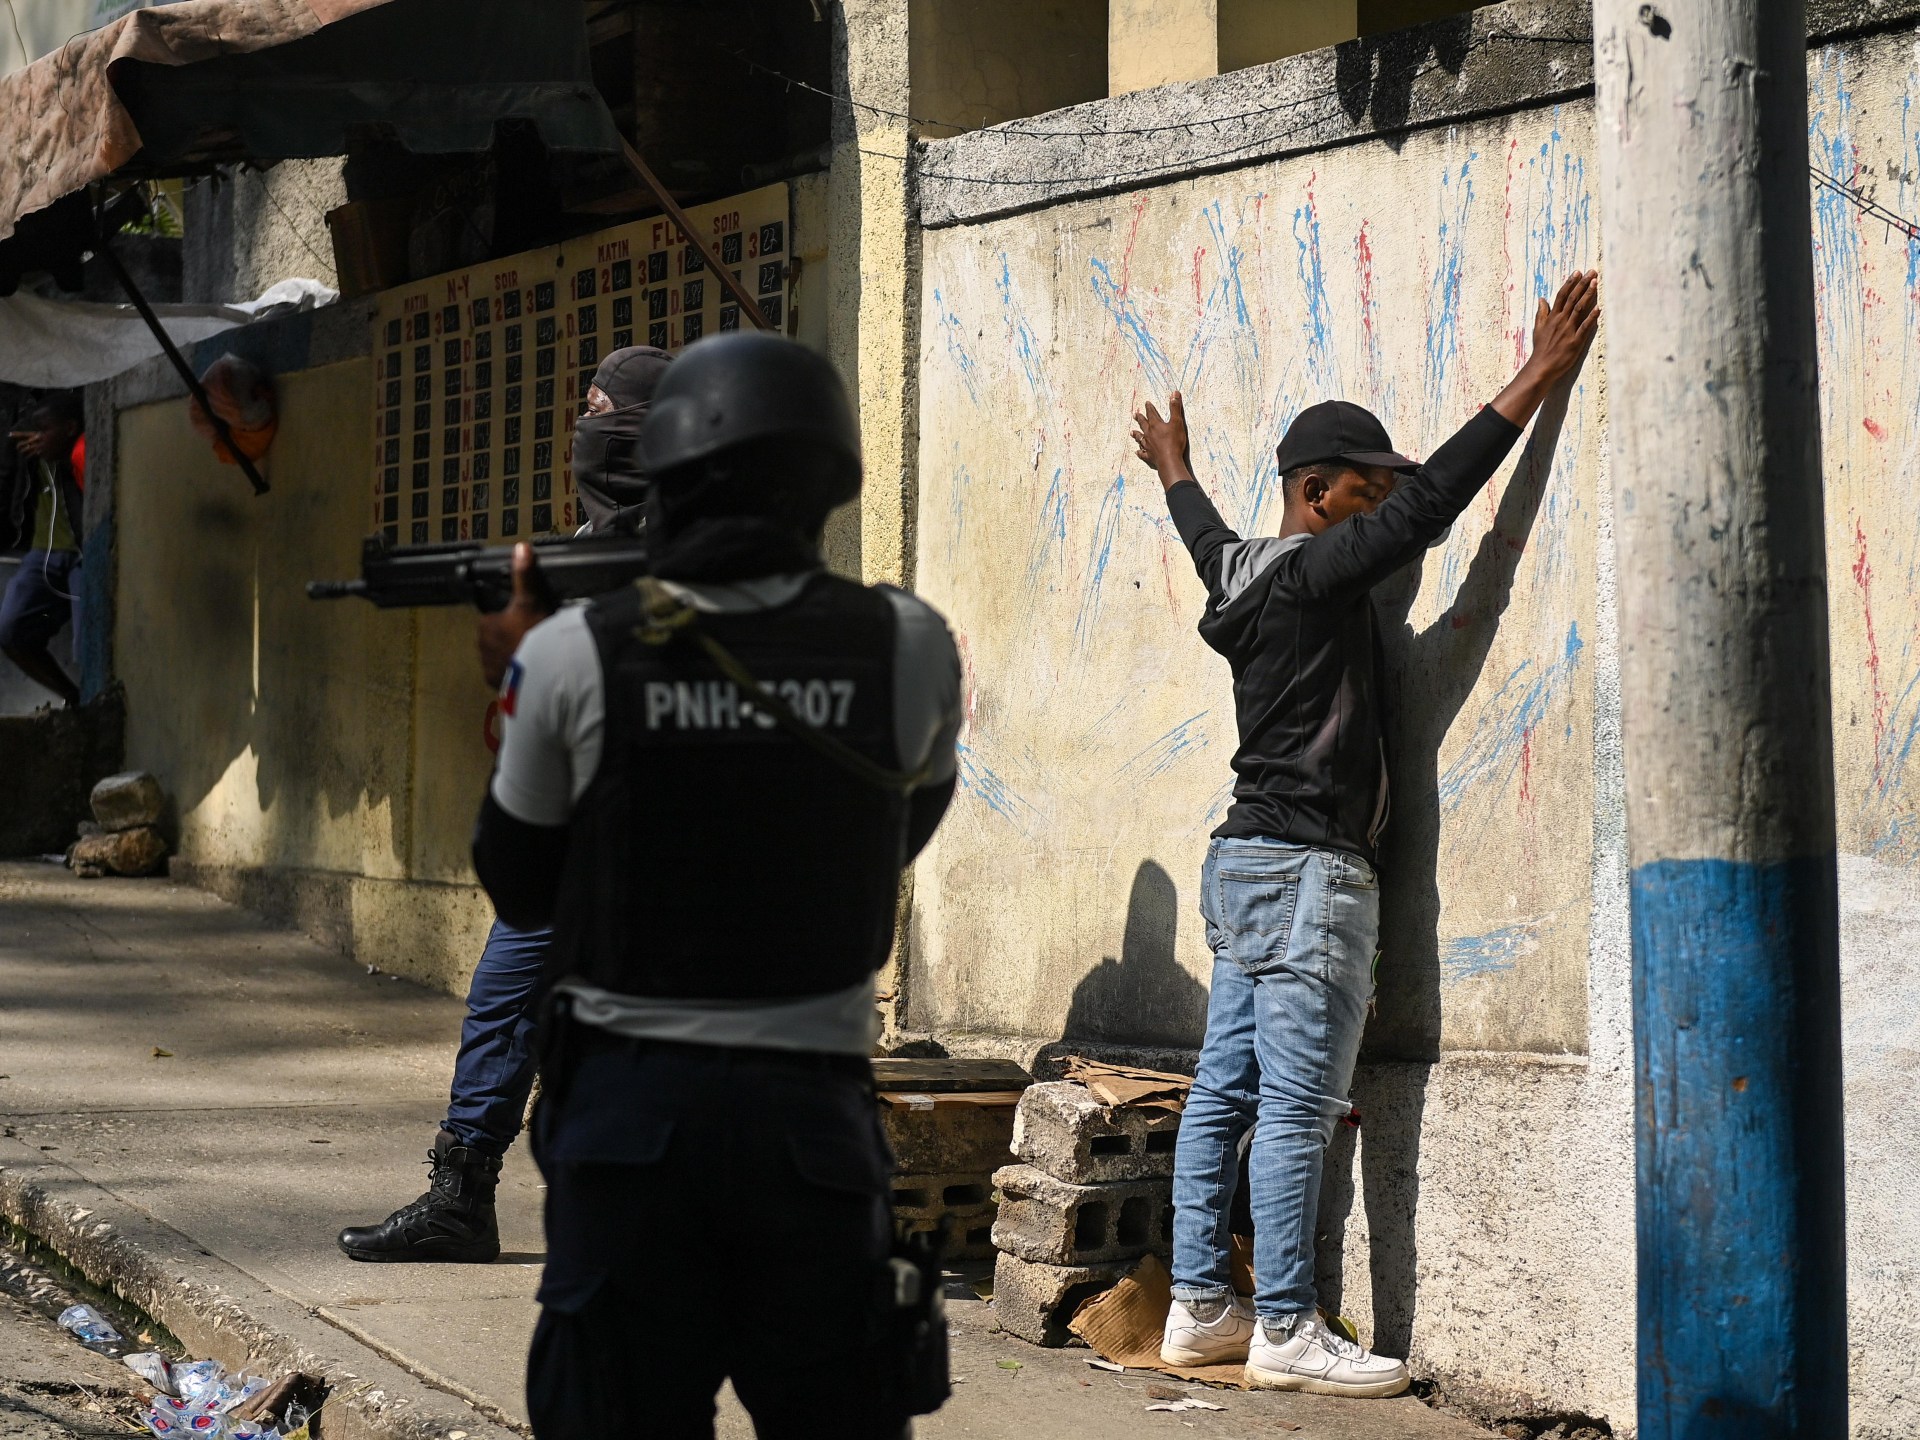 Anggota geng Haiti yang dicurigai dilempari batu, dibakar massa |  Berita Kejahatan